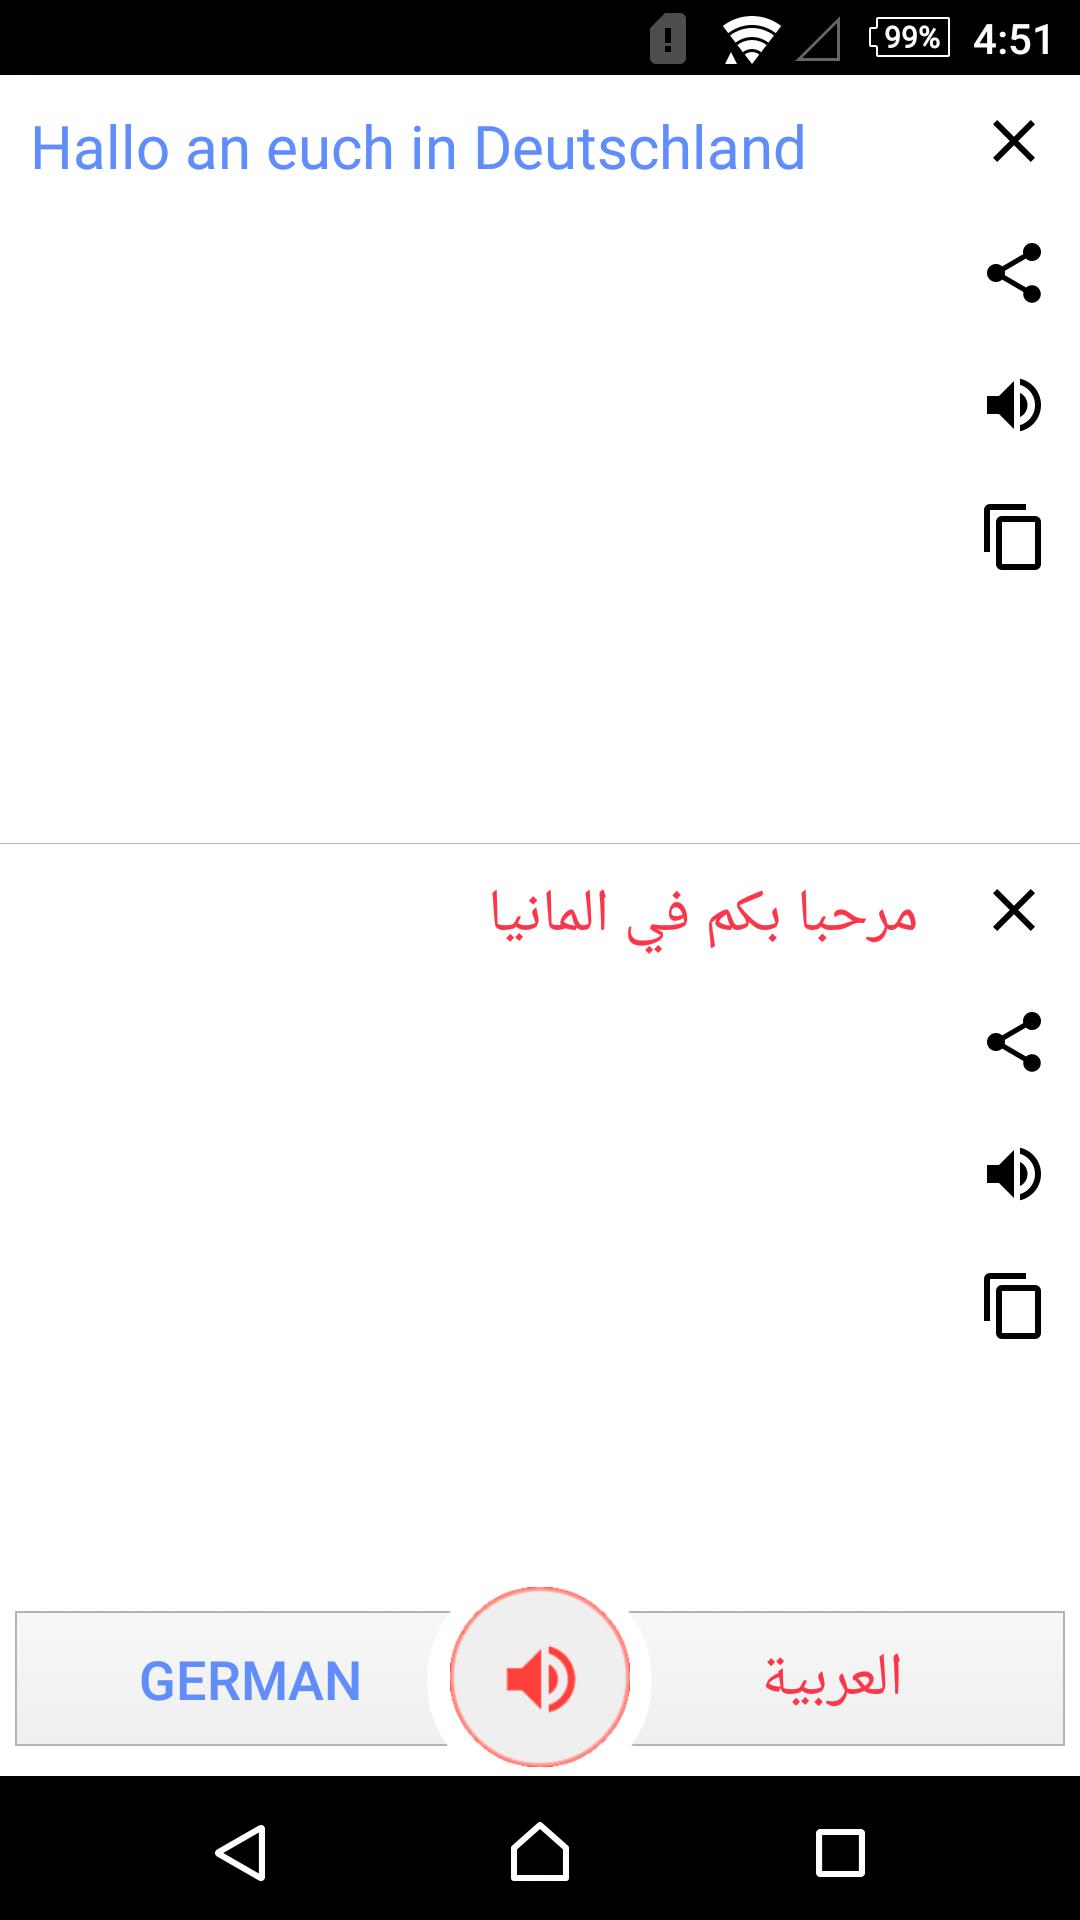 مترجم عربي الماني فوري for Android - APK Download